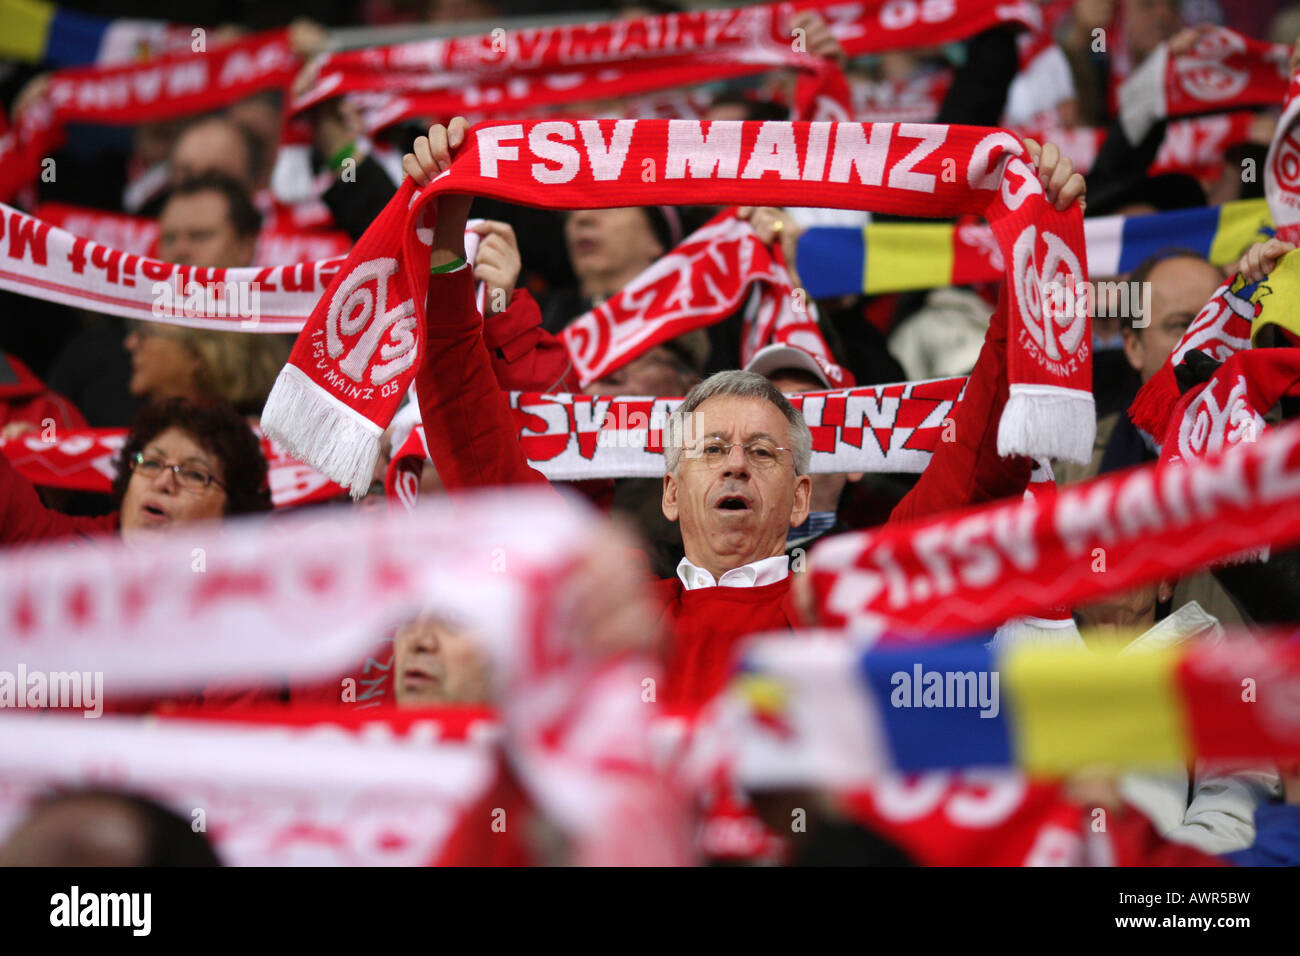 Los Fans del fútbol alemán club FSV Mainz 05 Foto de stock